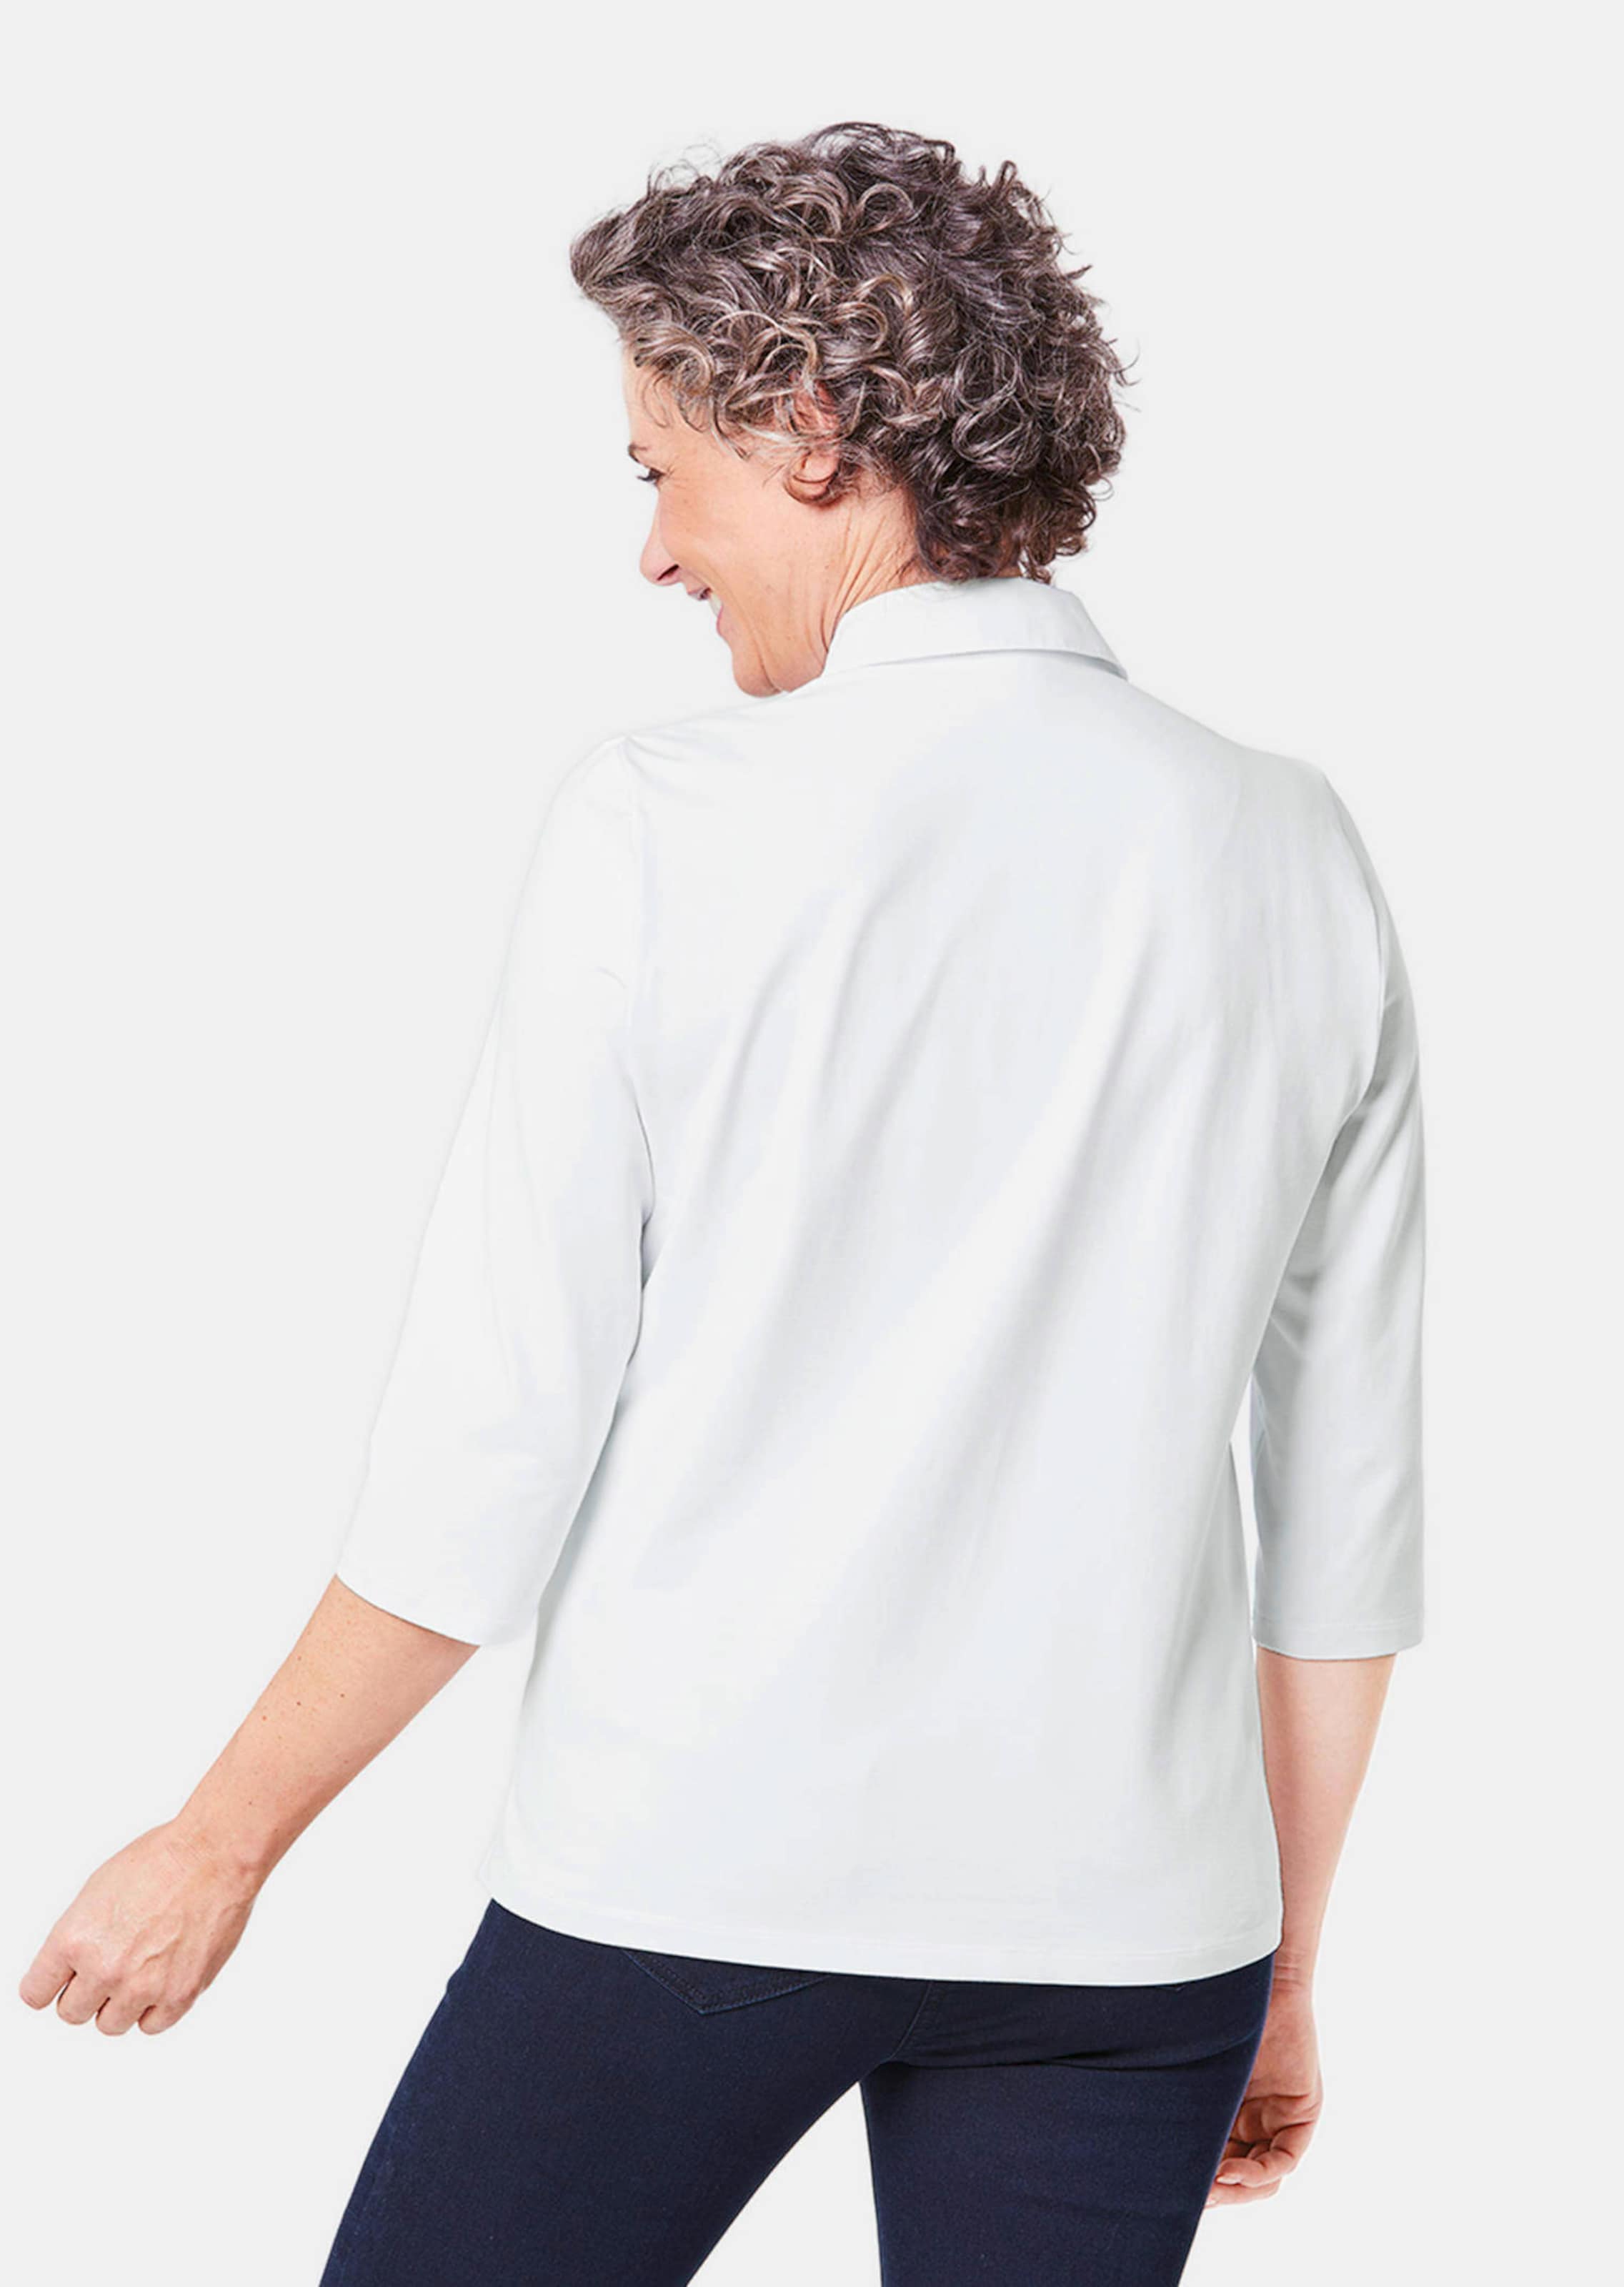 goldner fashion chemisier en jersey avec empiÃ¨cement en tissu dÃ©vorÃ© - blanc - gr. 46 de donna